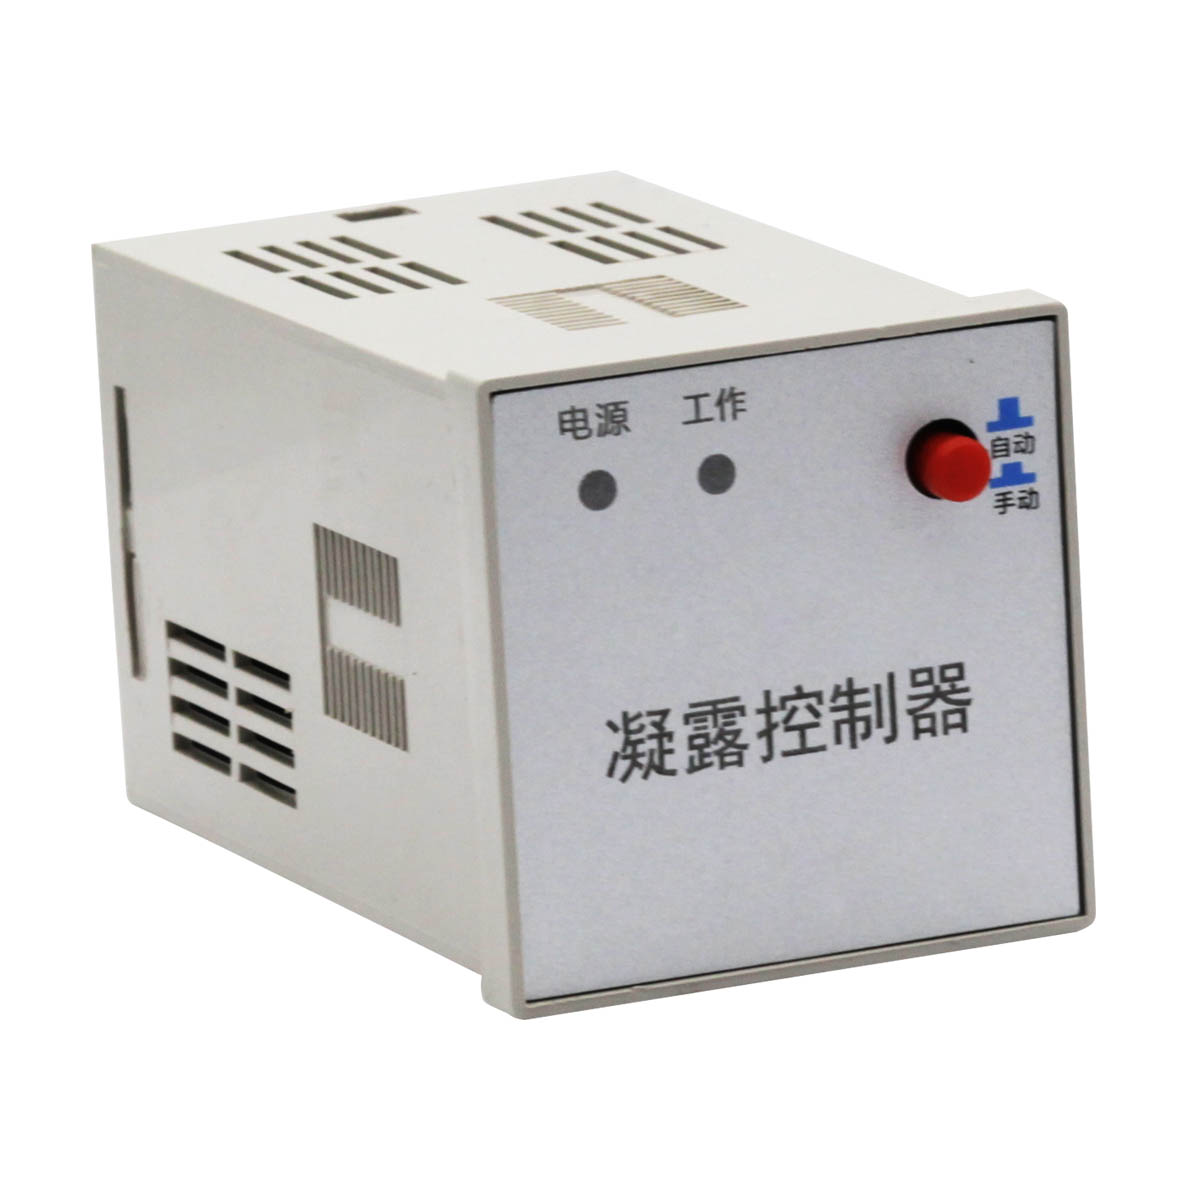 山丹N8-MU82-A-150A-1微机保护测控装置/FRSR480-50-7.